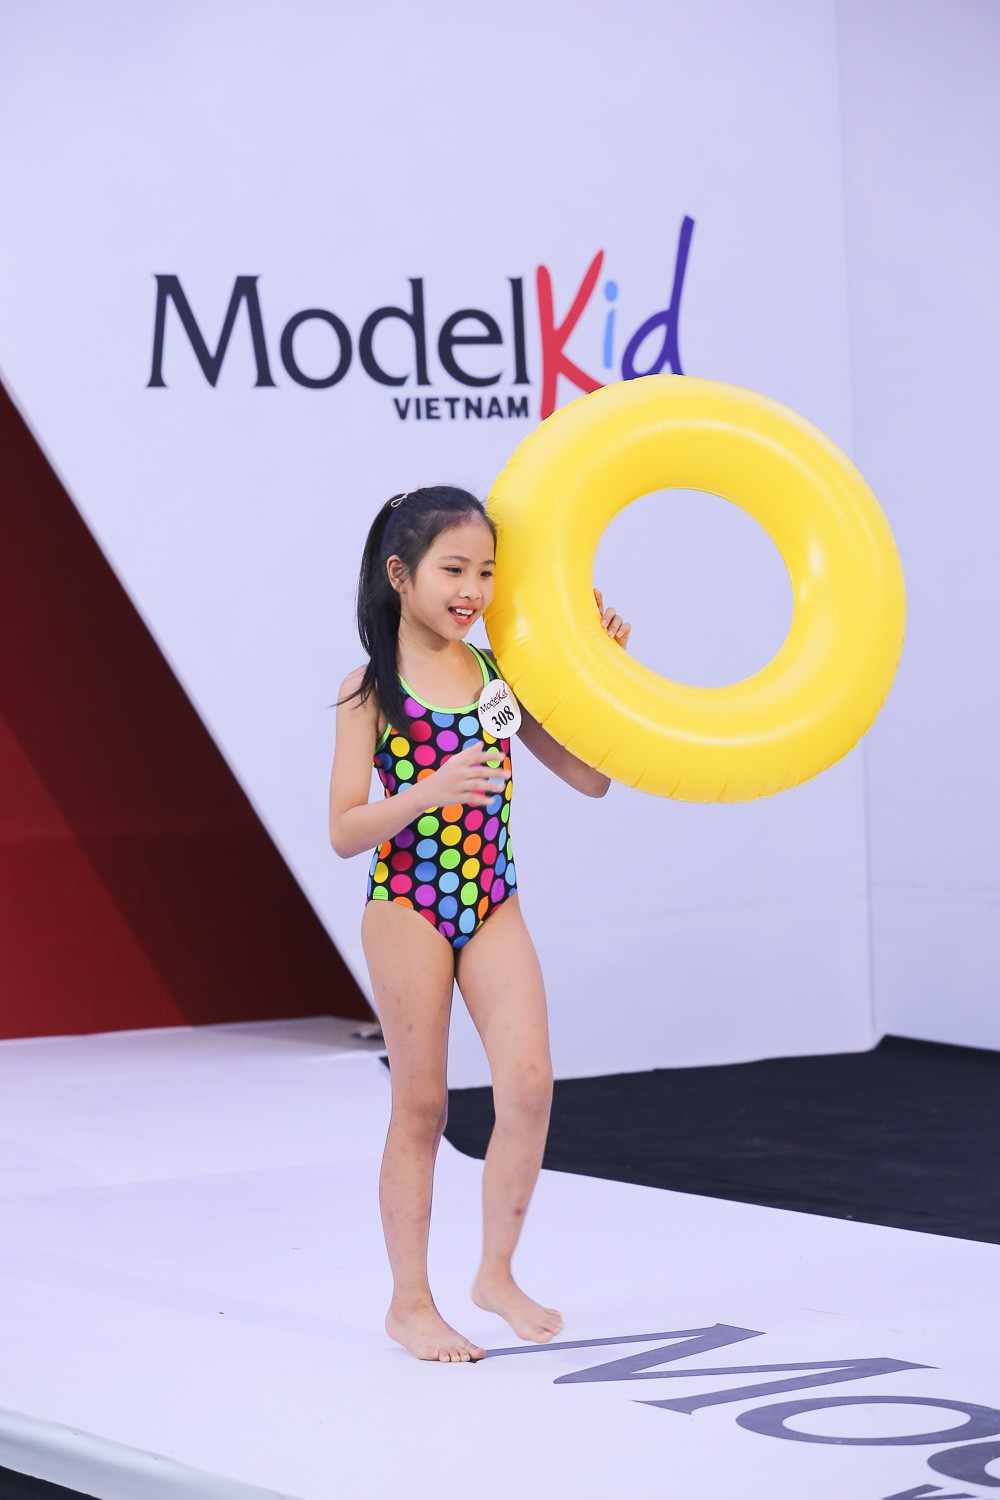 Cuộc đổ bộ màu sắc của các siêu mẫu nhí tại Model Kid Việt Nam 2019 - Ảnh 7.